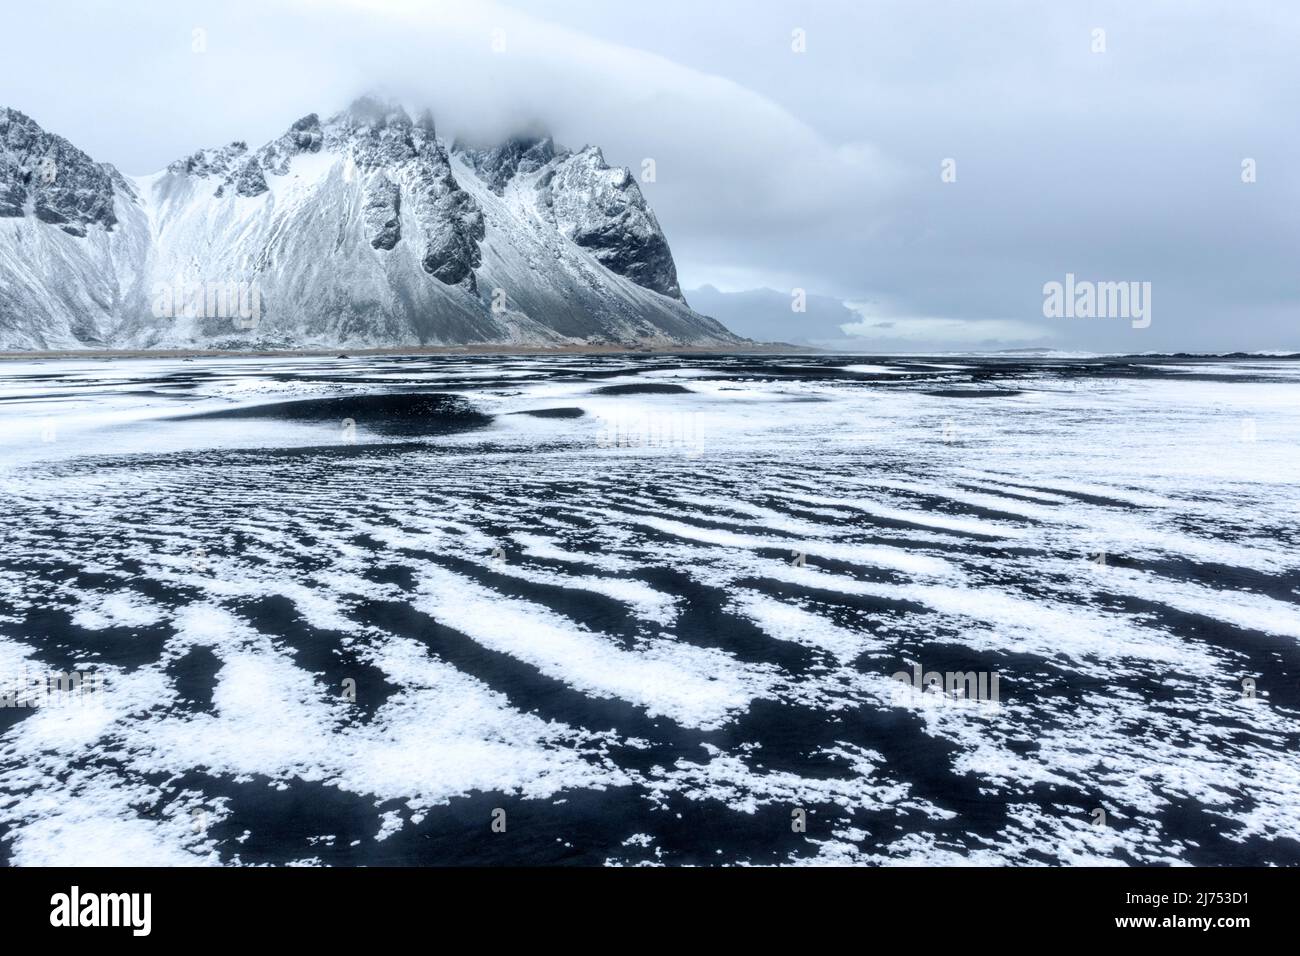 Vue d'hiver de la chaîne de montagnes Vestarhorn sur la péninsule de Stokksnes, en Islande, avec une fine couche de neige et de glace au premier plan. Banque D'Images